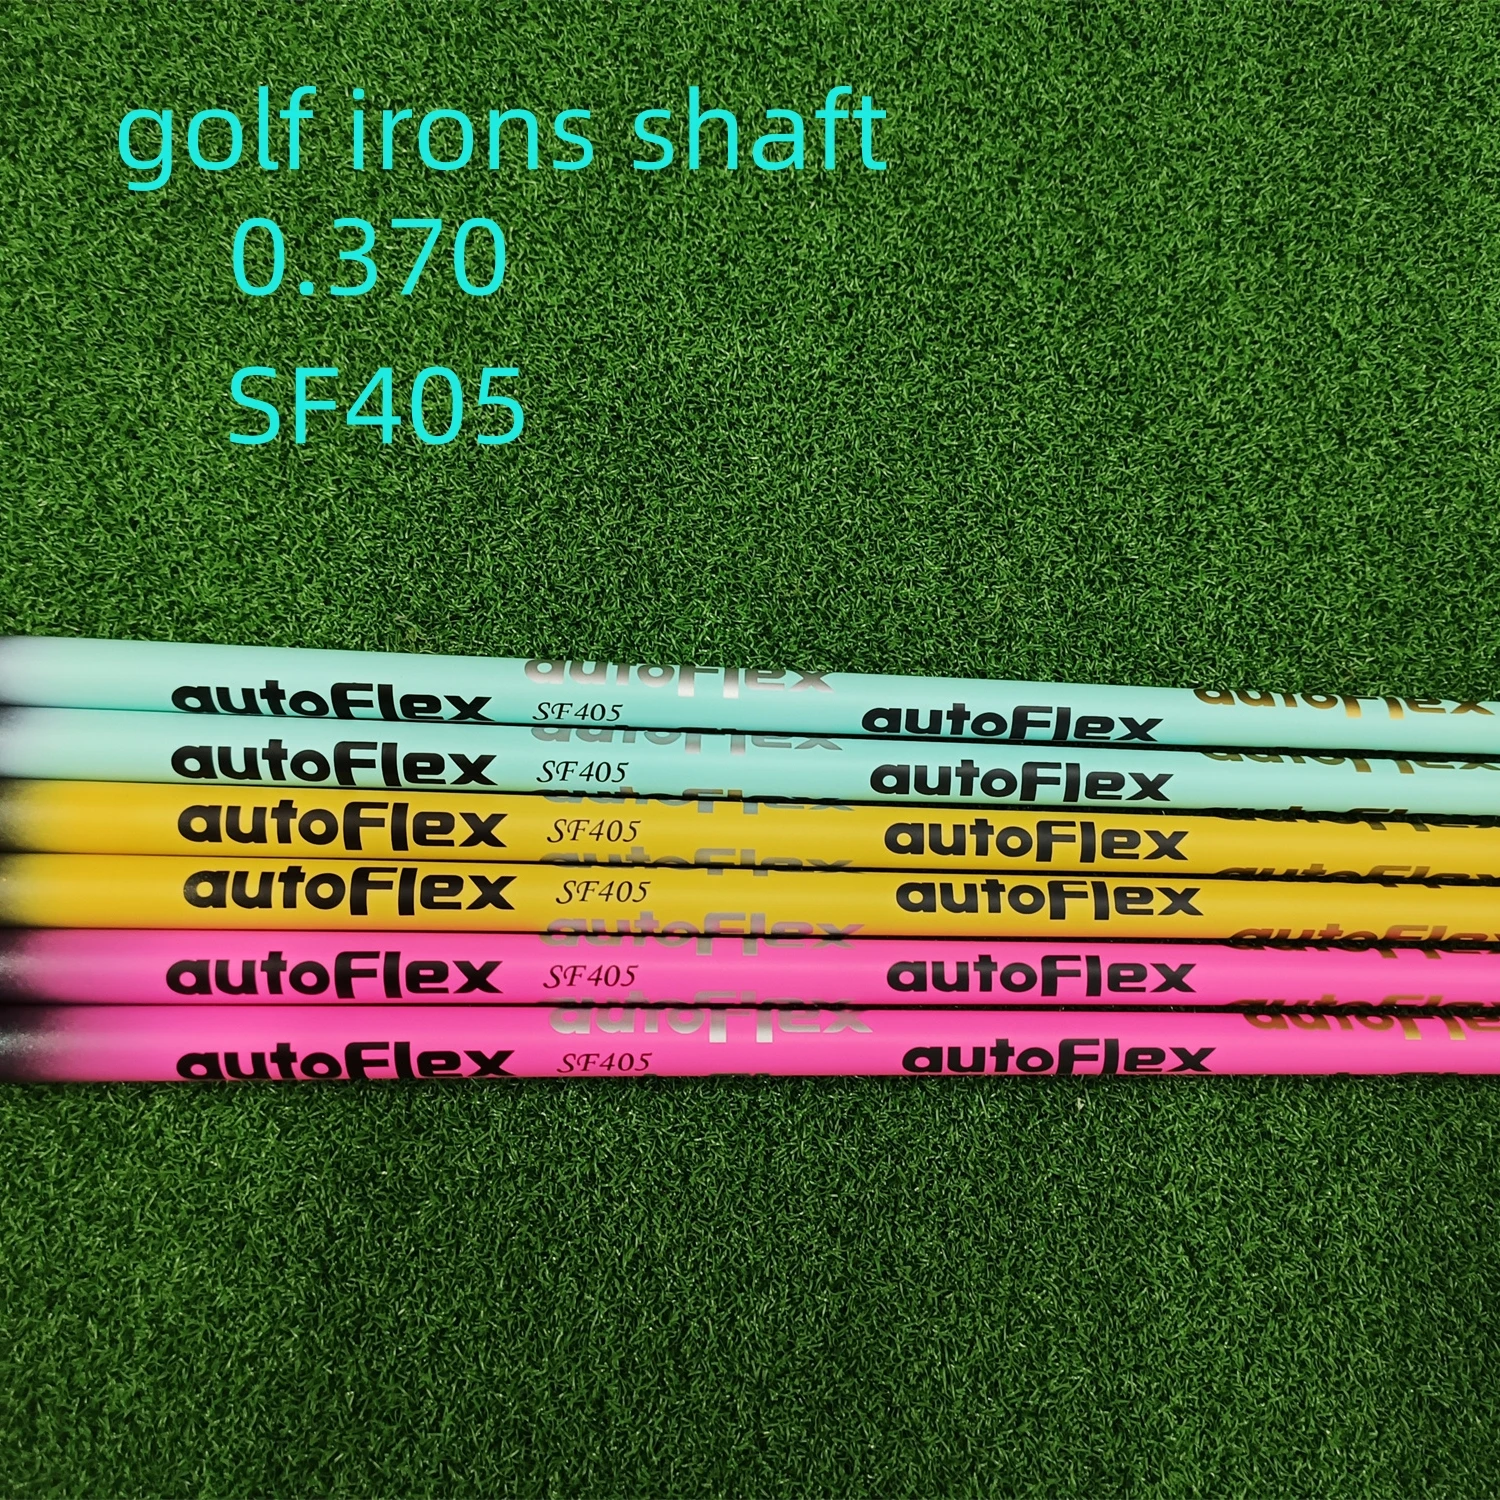 

New Golf iron wedge Shaft Pink/Yellow/Blue Autoflex SF405 Flex Graphite irons Shaft Golf Shaft "39" LIGHTWEIGHT shaft